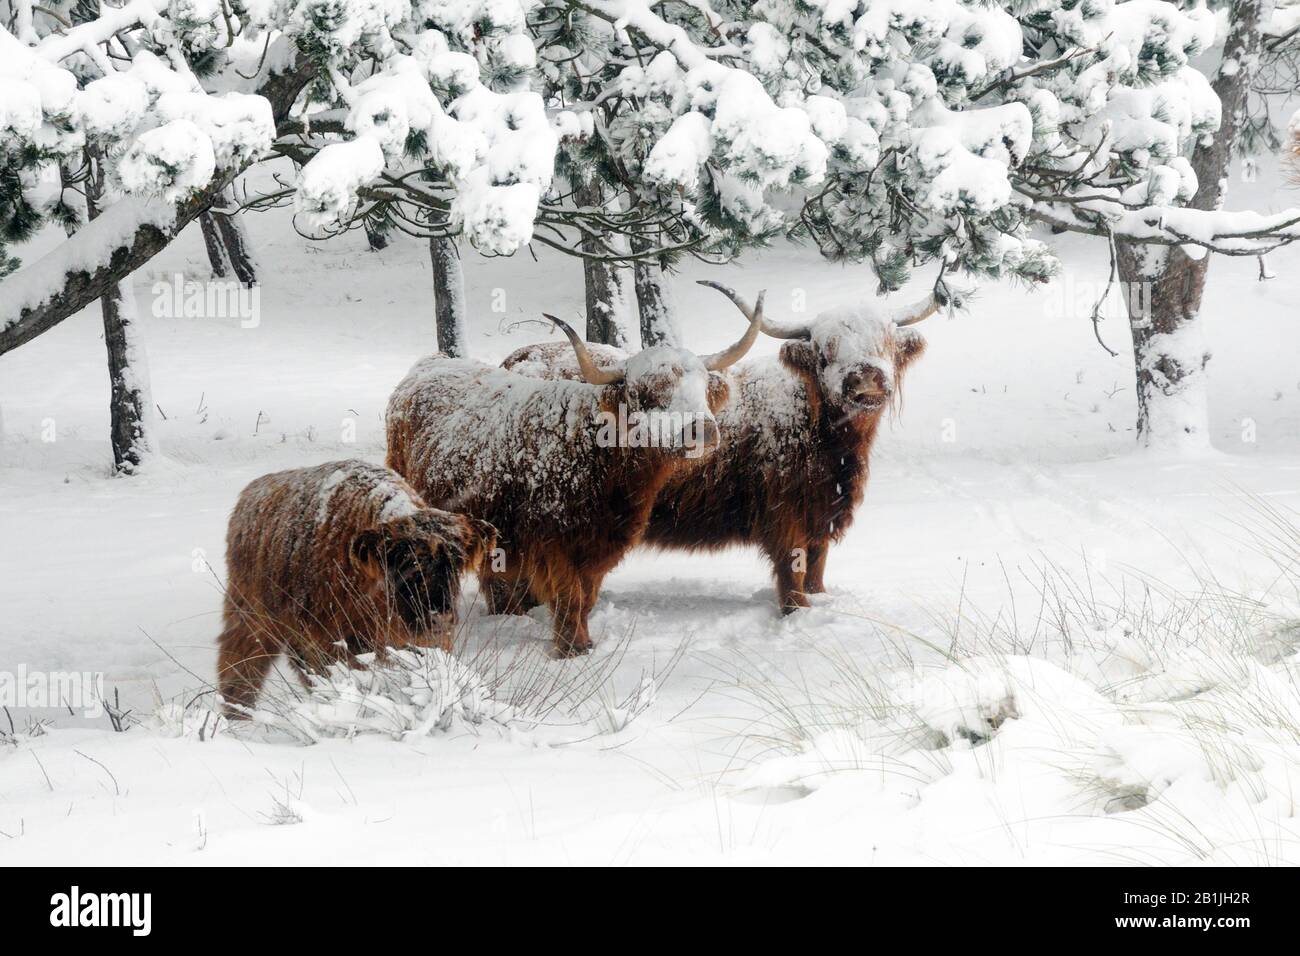 Scottish Highland Cattle, Kyloe, Highland vache, Heelan coo (Bos primigenius F. taurus), sous les arbres en hiver, Pays-Bas, Huisduinen Banque D'Images